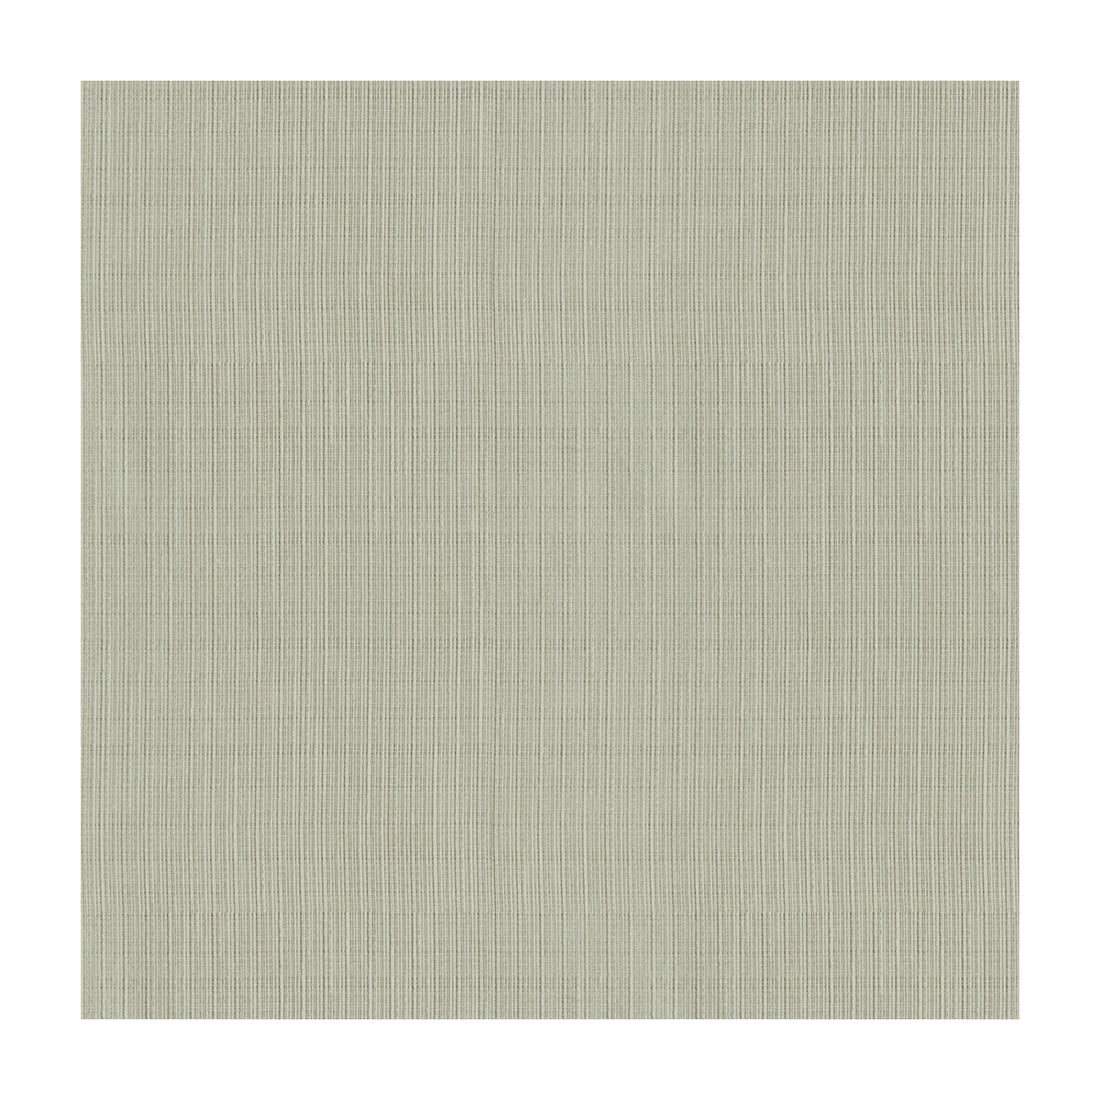 Kravet Basics fabric in 4116-11 color - pattern 4116.11.0 - by Kravet Basics